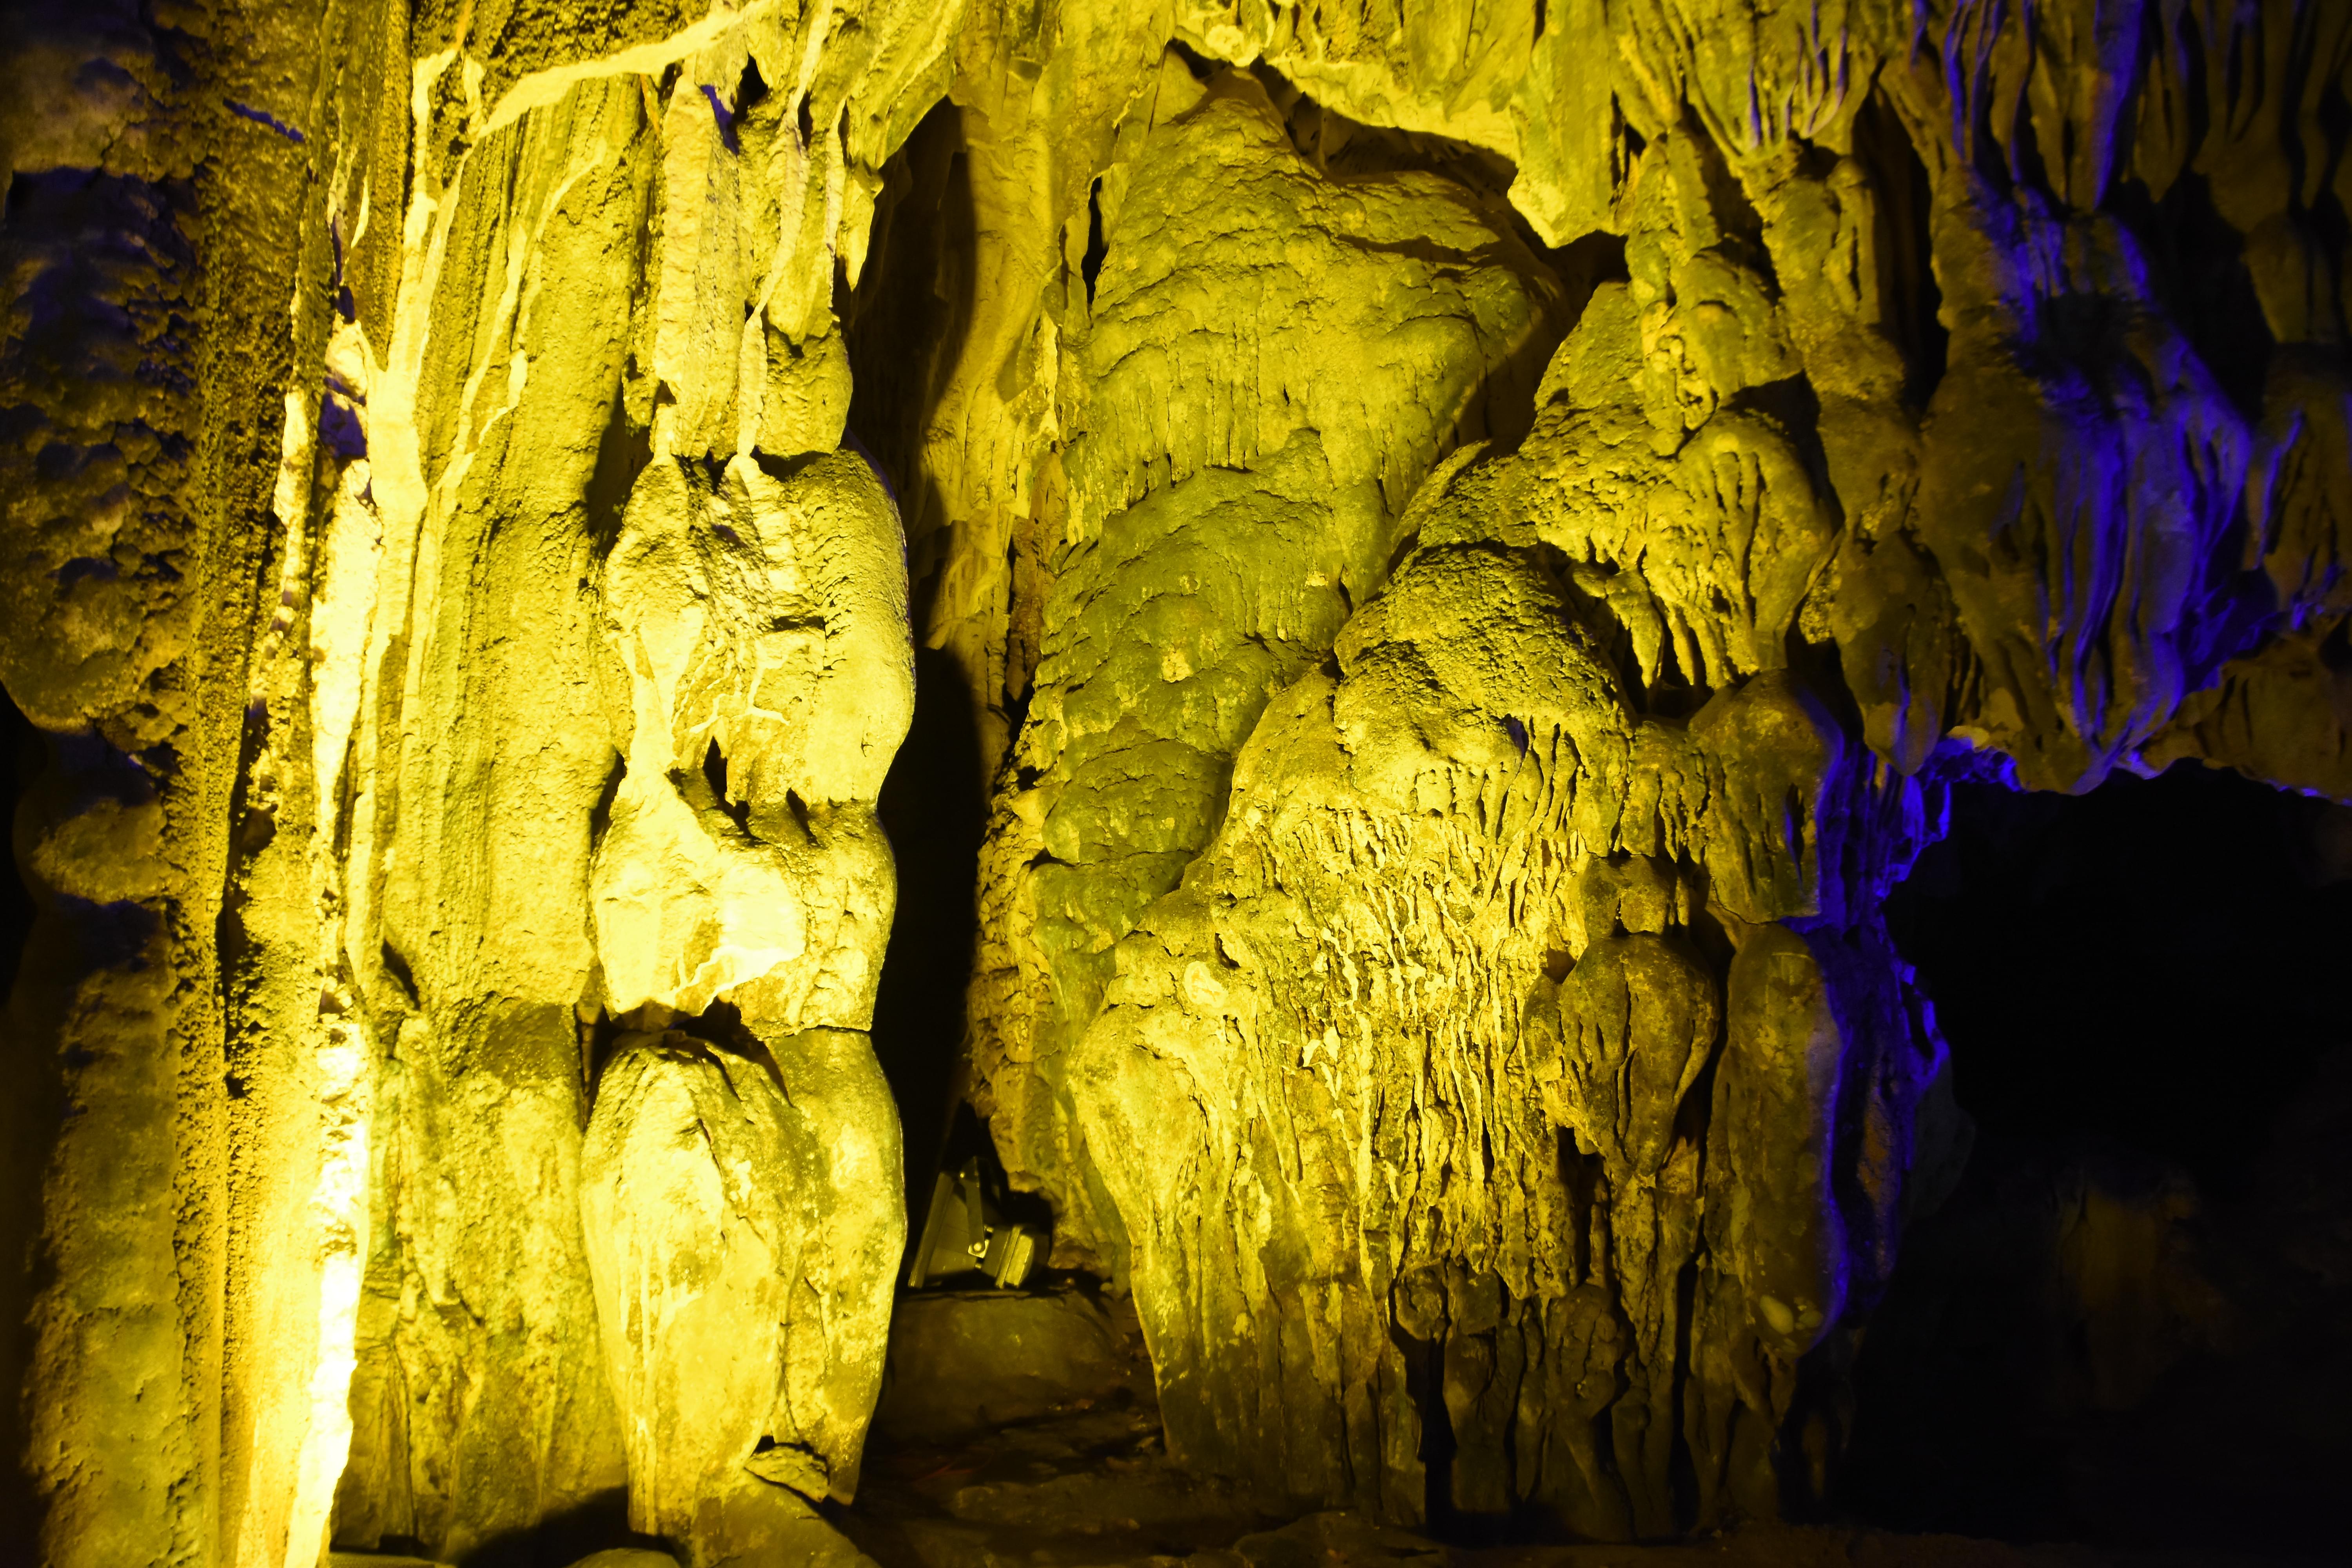 Visit the Bat Cave